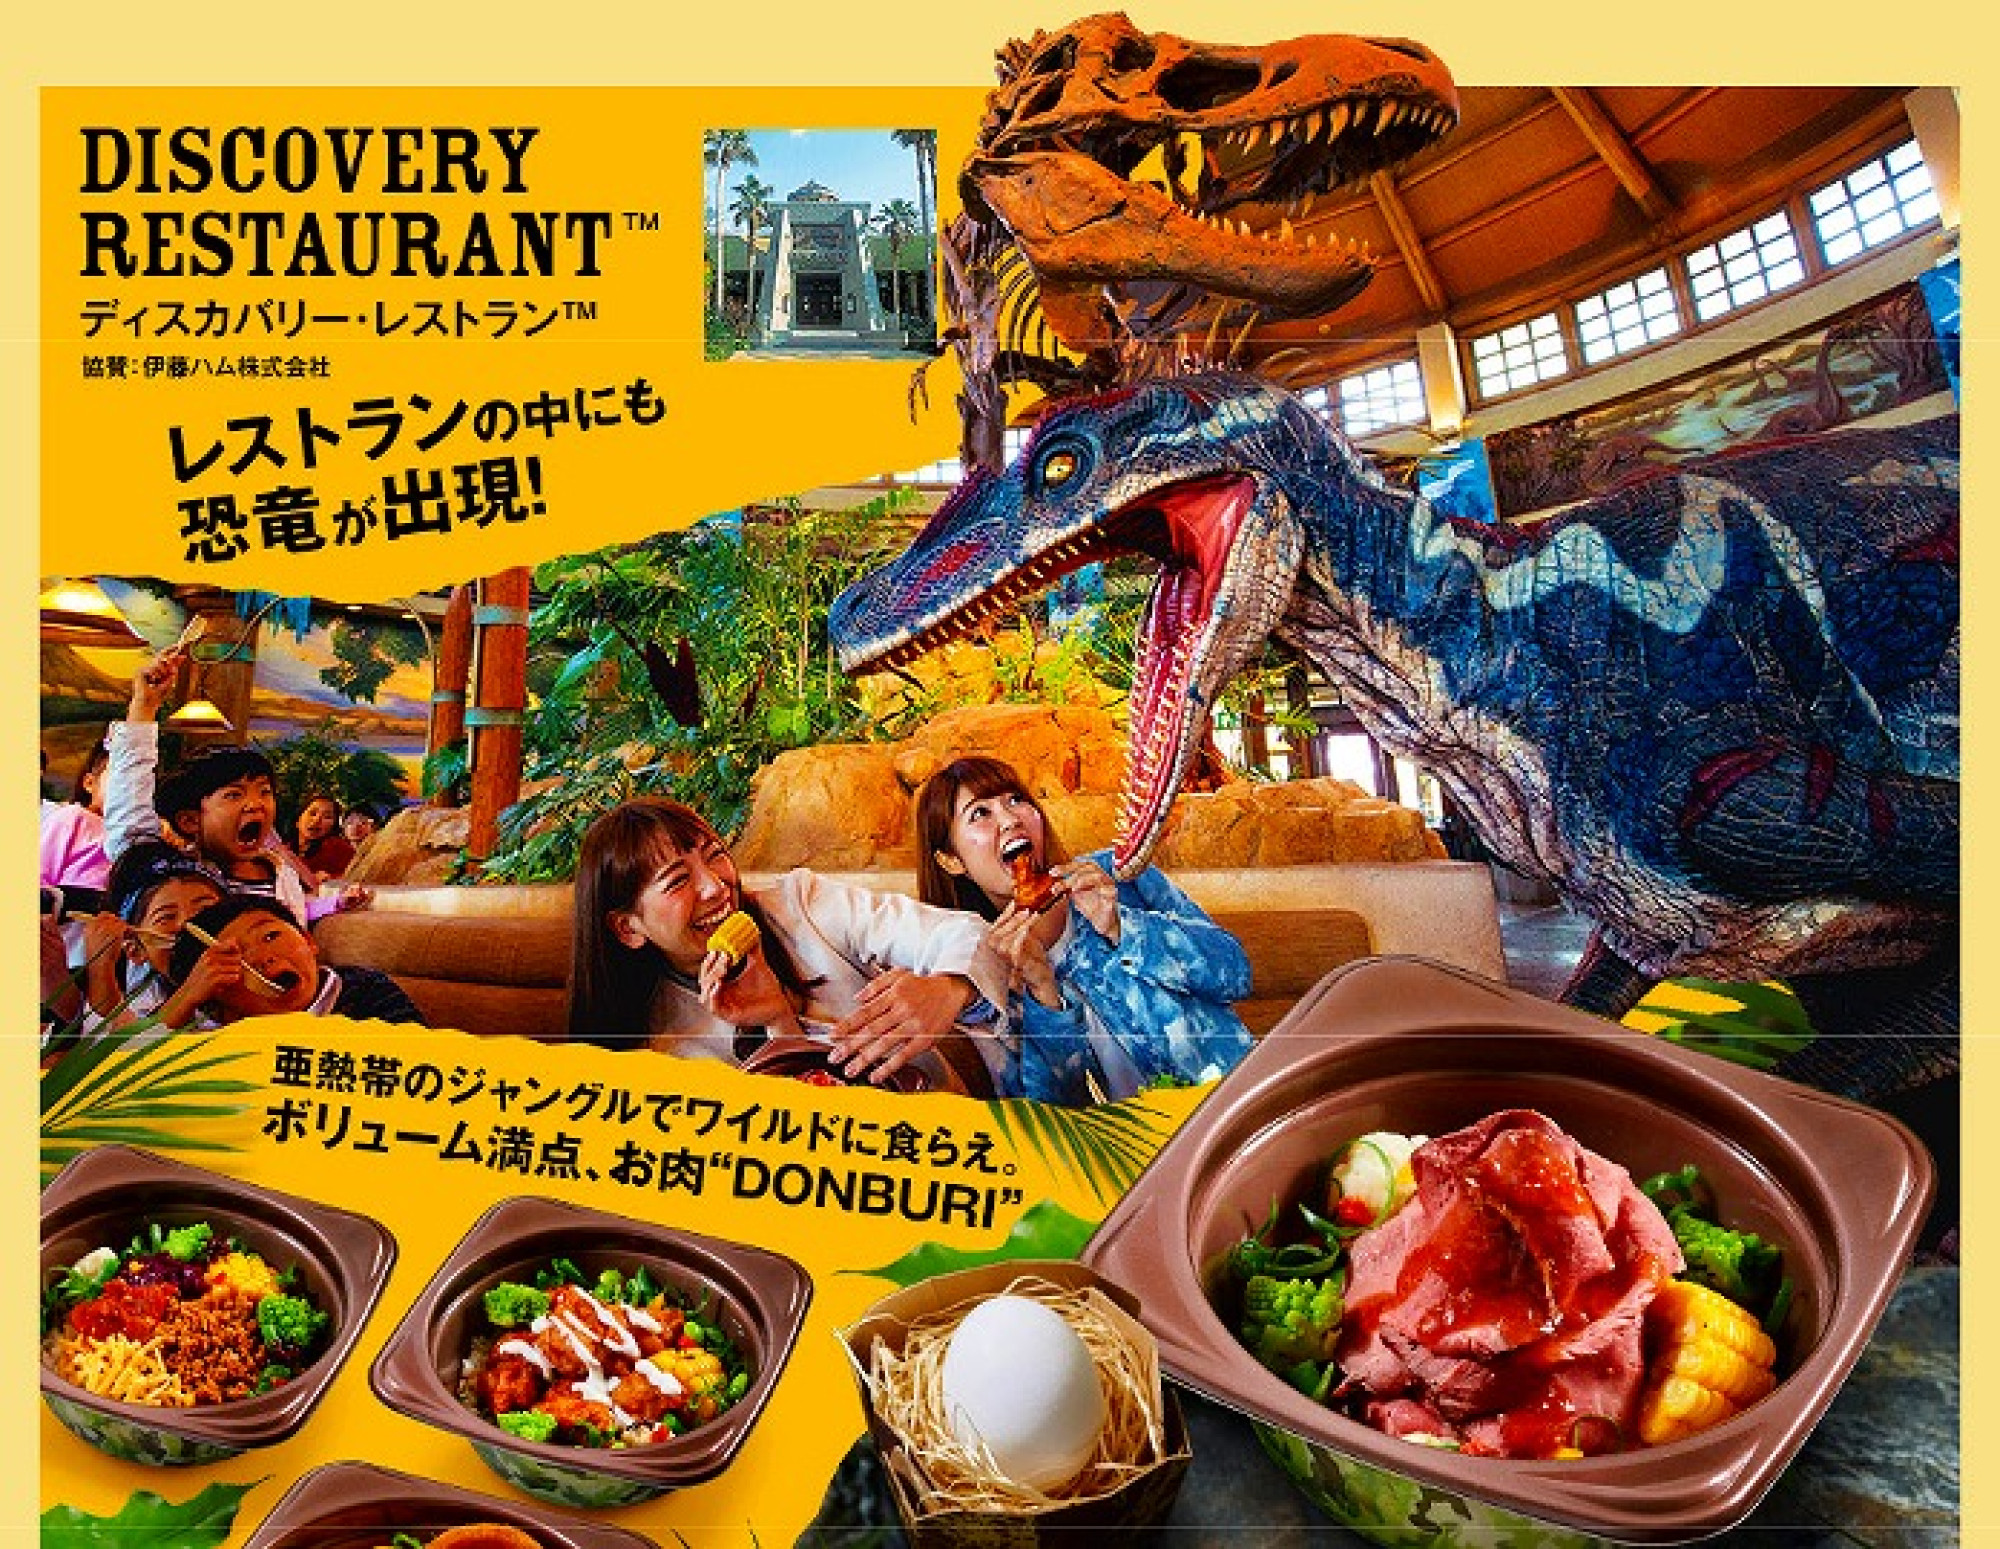 Usjの ディスカバリー レストラン はレストラン内に恐竜が現れる キャステル Castel ディズニー情報